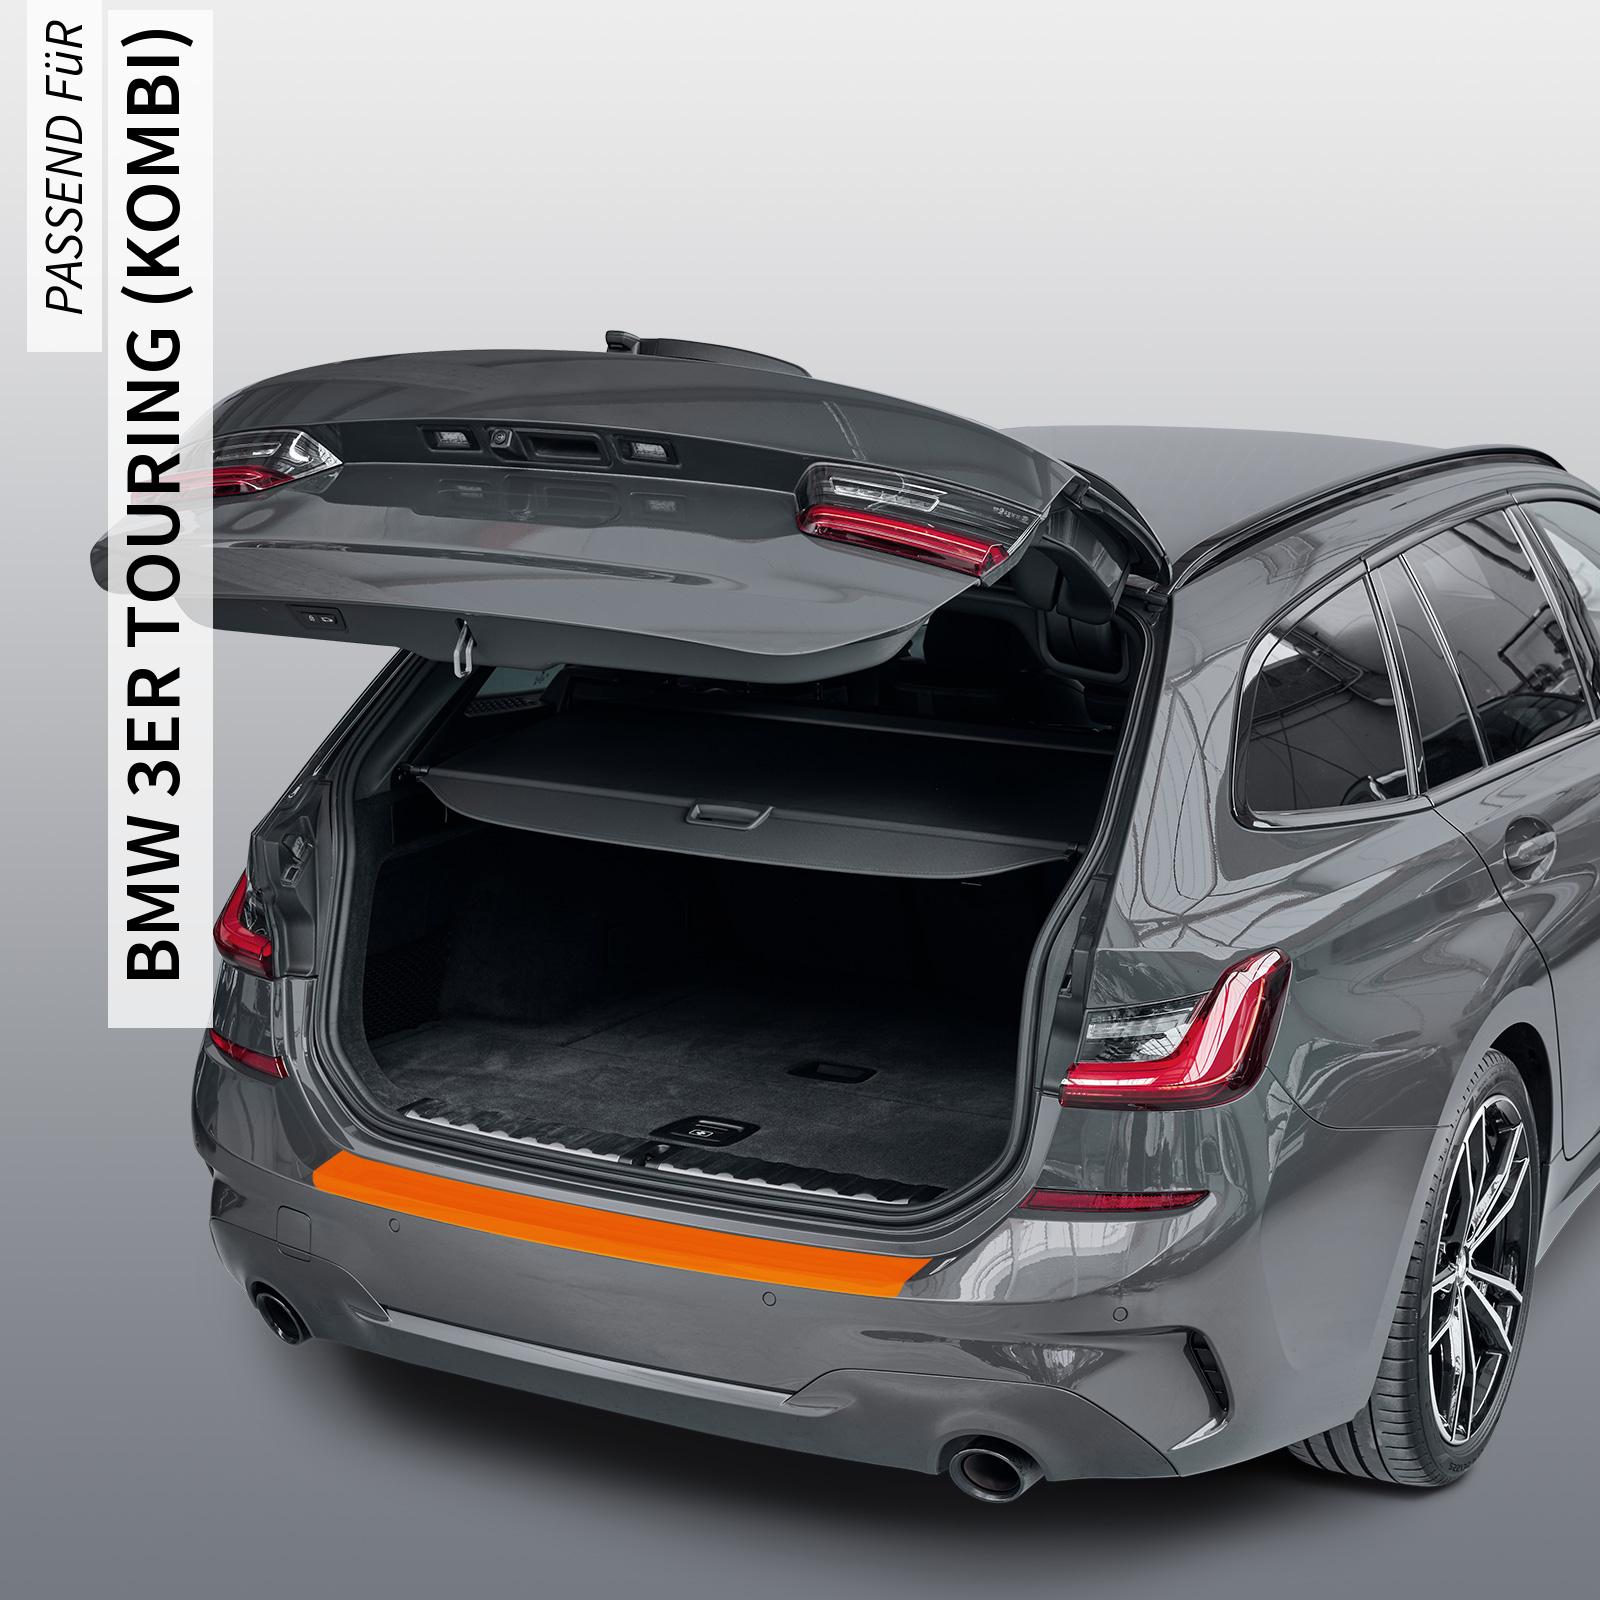 Ladekantenschutzfolie - Transparent Glatt Hochglänzend 240 µm stark für BMW 3er Touring (Kombi) Typ F31, ab BJ 09/2012-05/2015